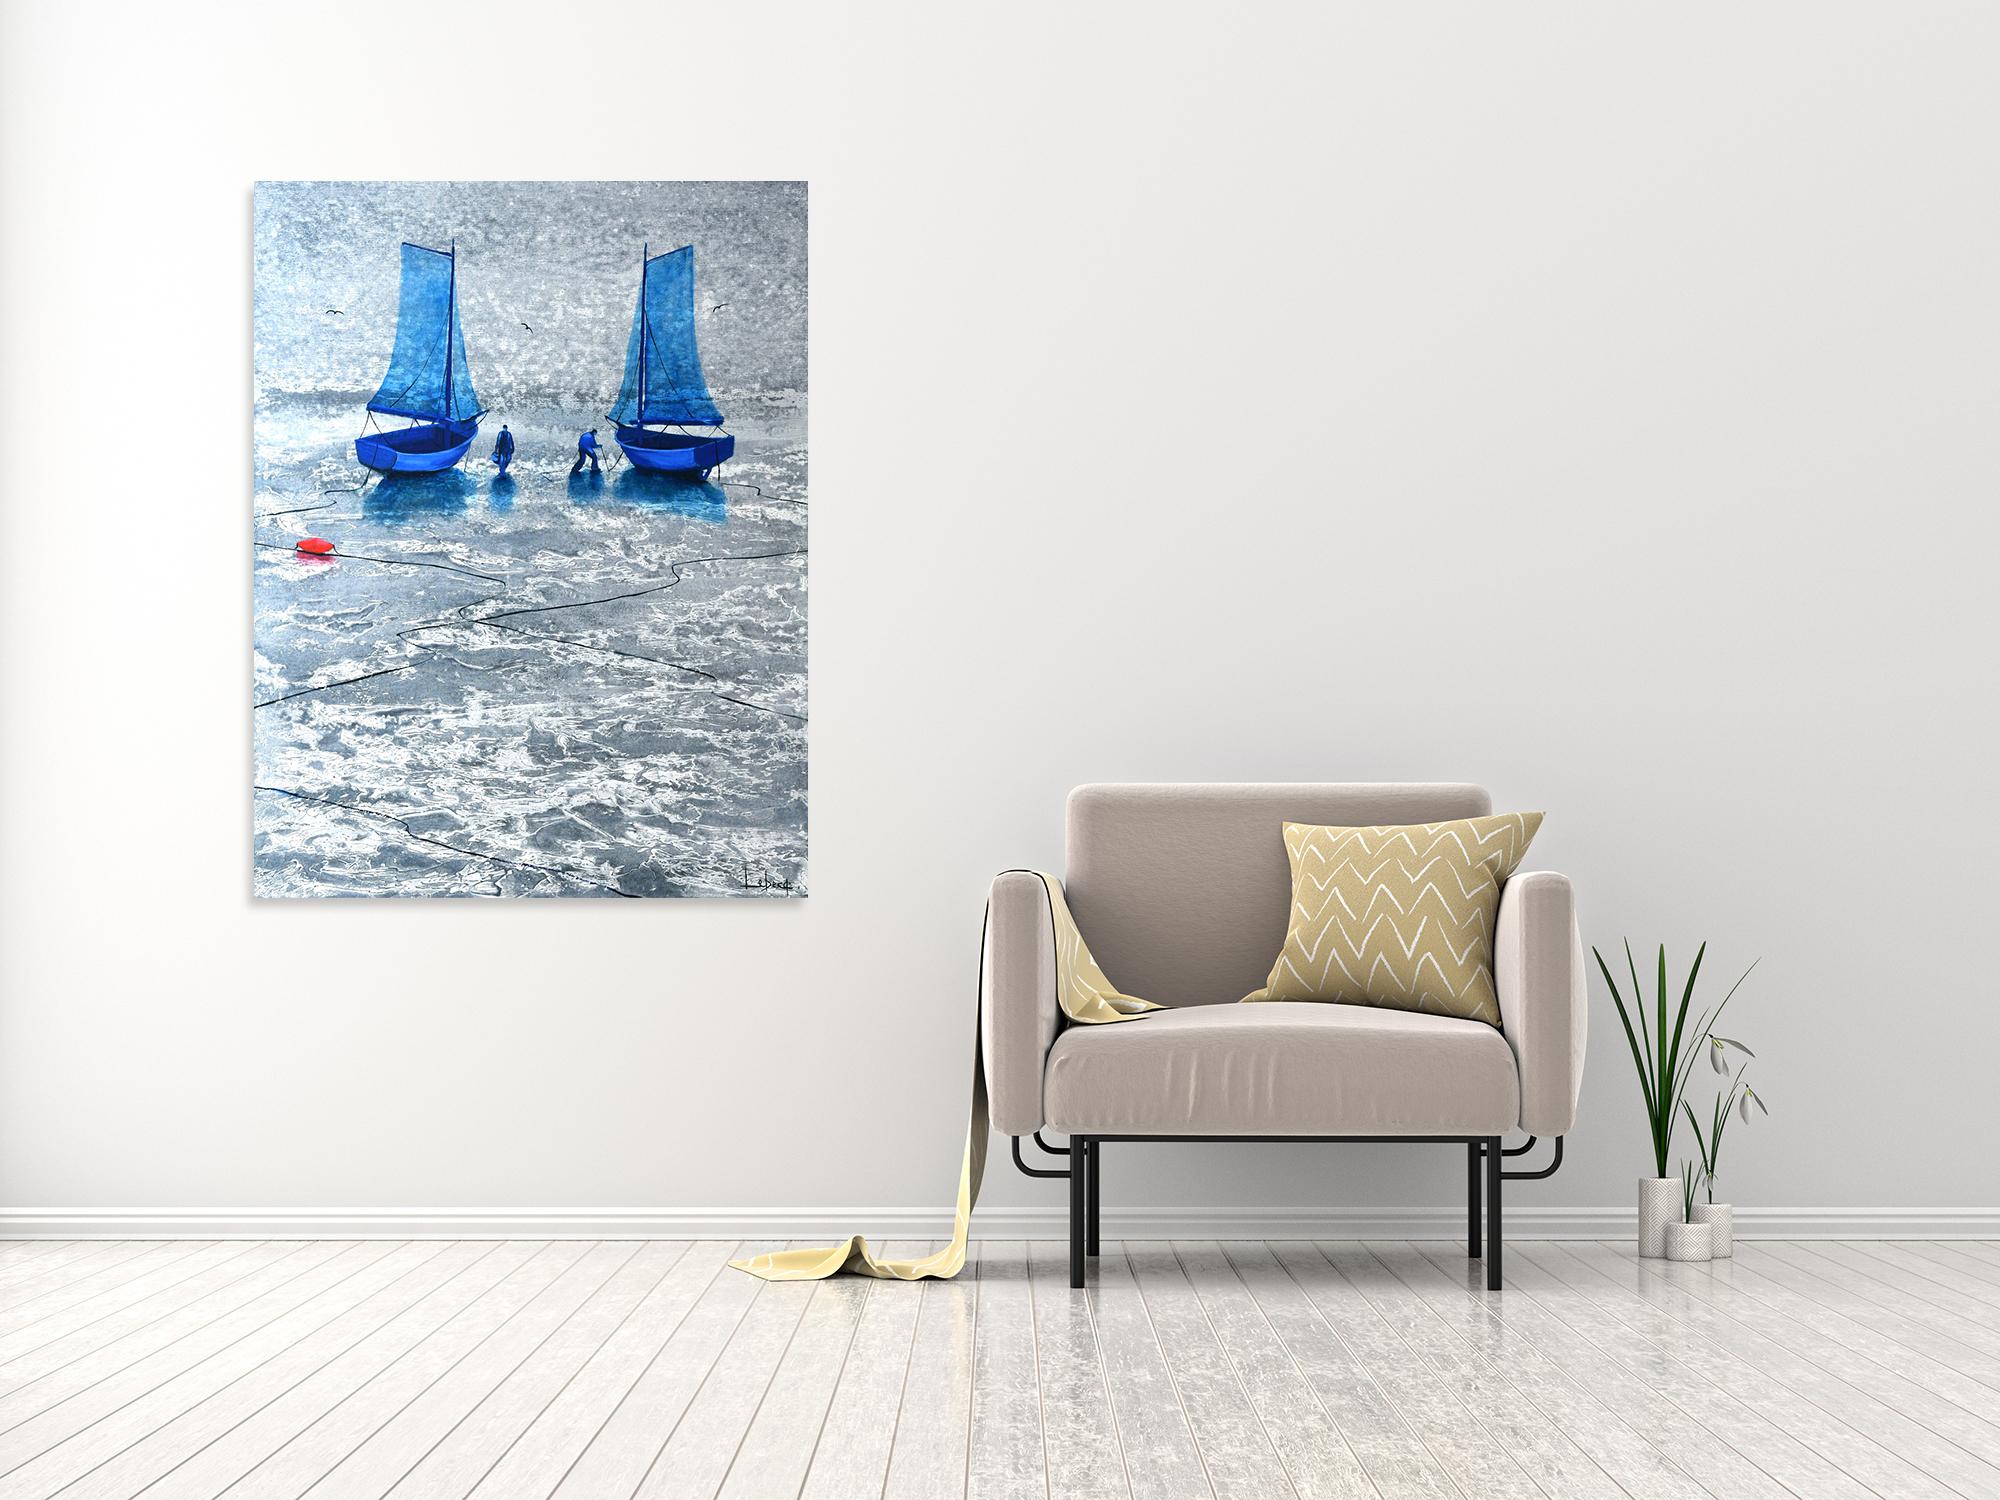 Voiles Jumelées - Ocean Landscape - Boats White & Blue Painting by Denis Lebecqs 1